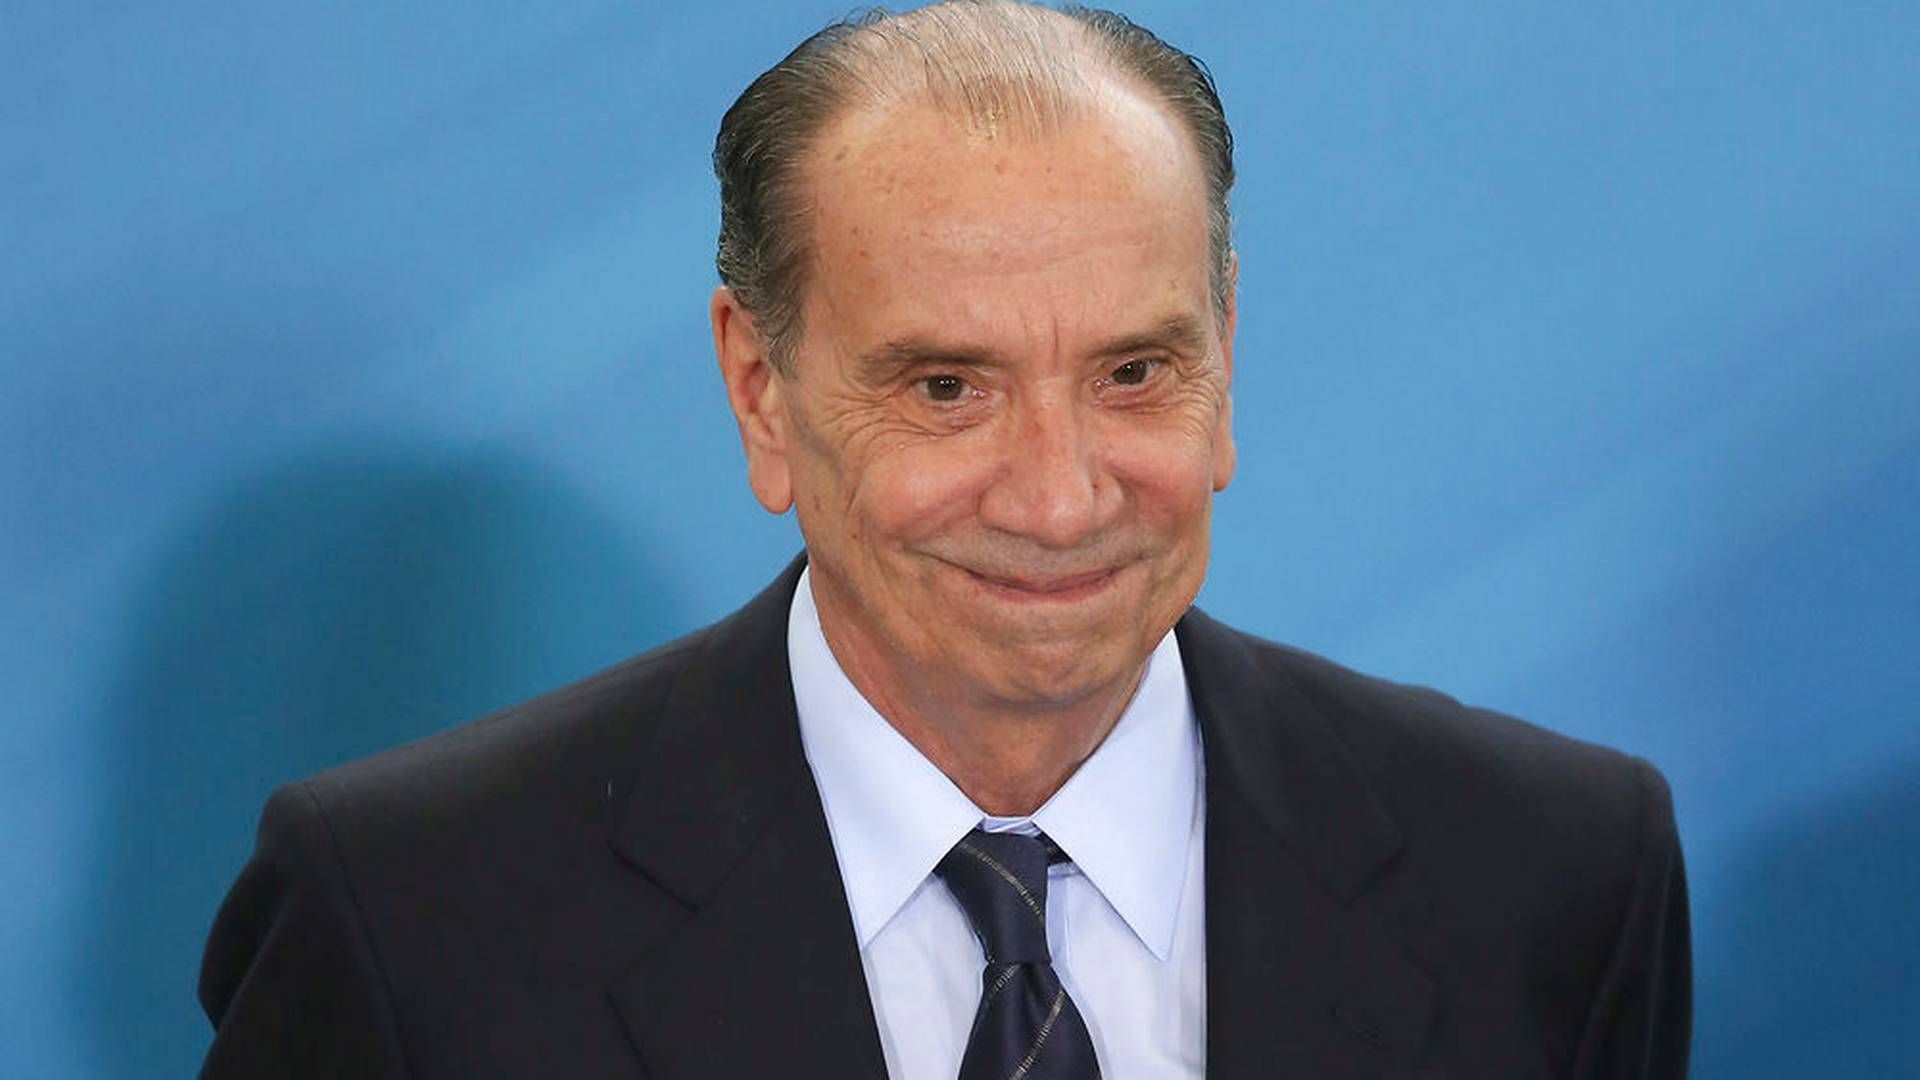 Aloysio Nunes Ferreira, Brasiliens udenrigsminister. | Foto: Eraldo Peres/Ritzau Scanpix